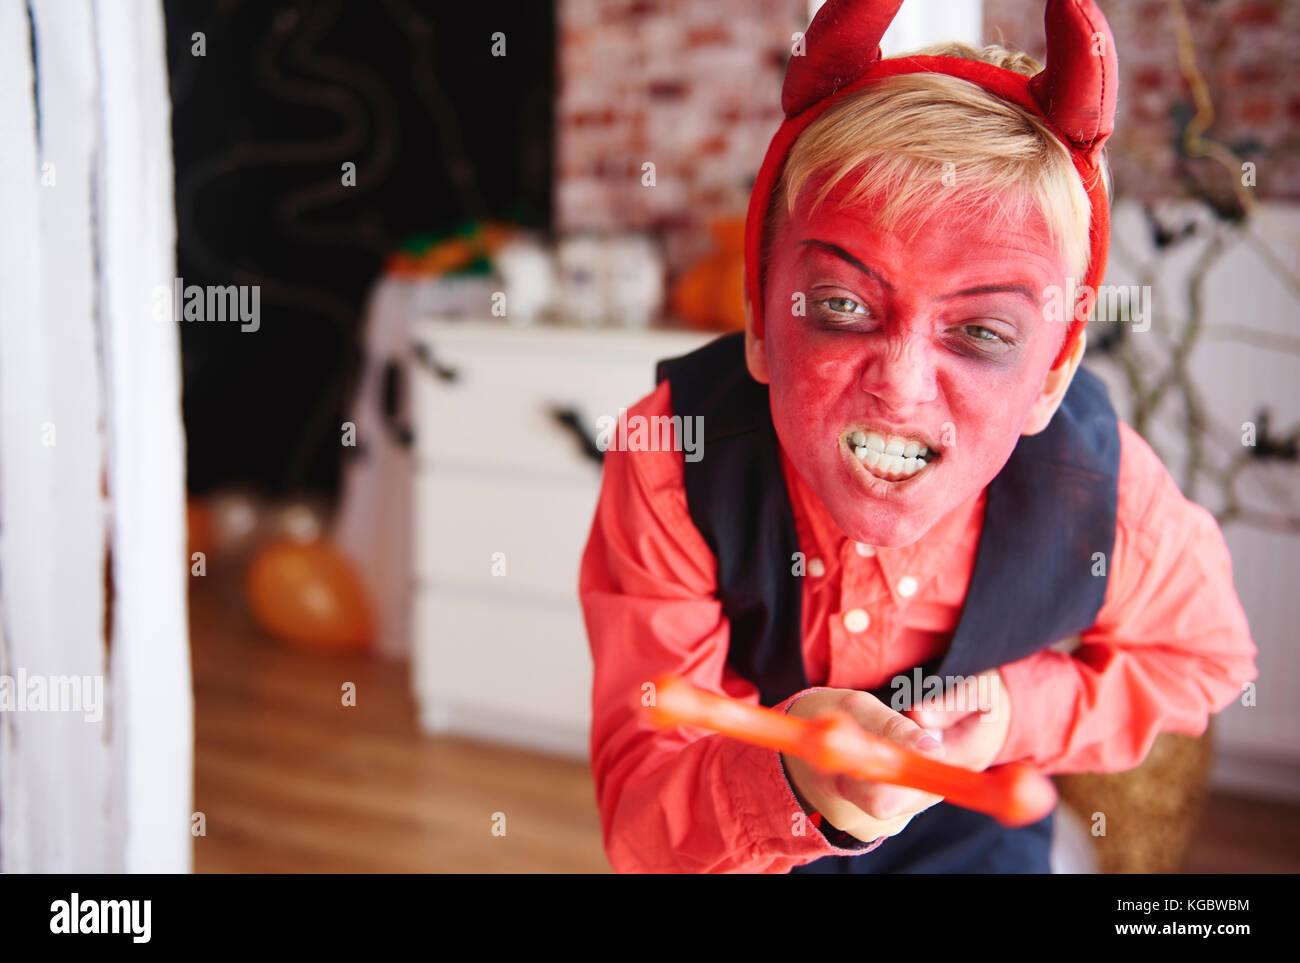 Junge in Teufel Kostüm versuchen, Leute zu erschrecken Stockfoto